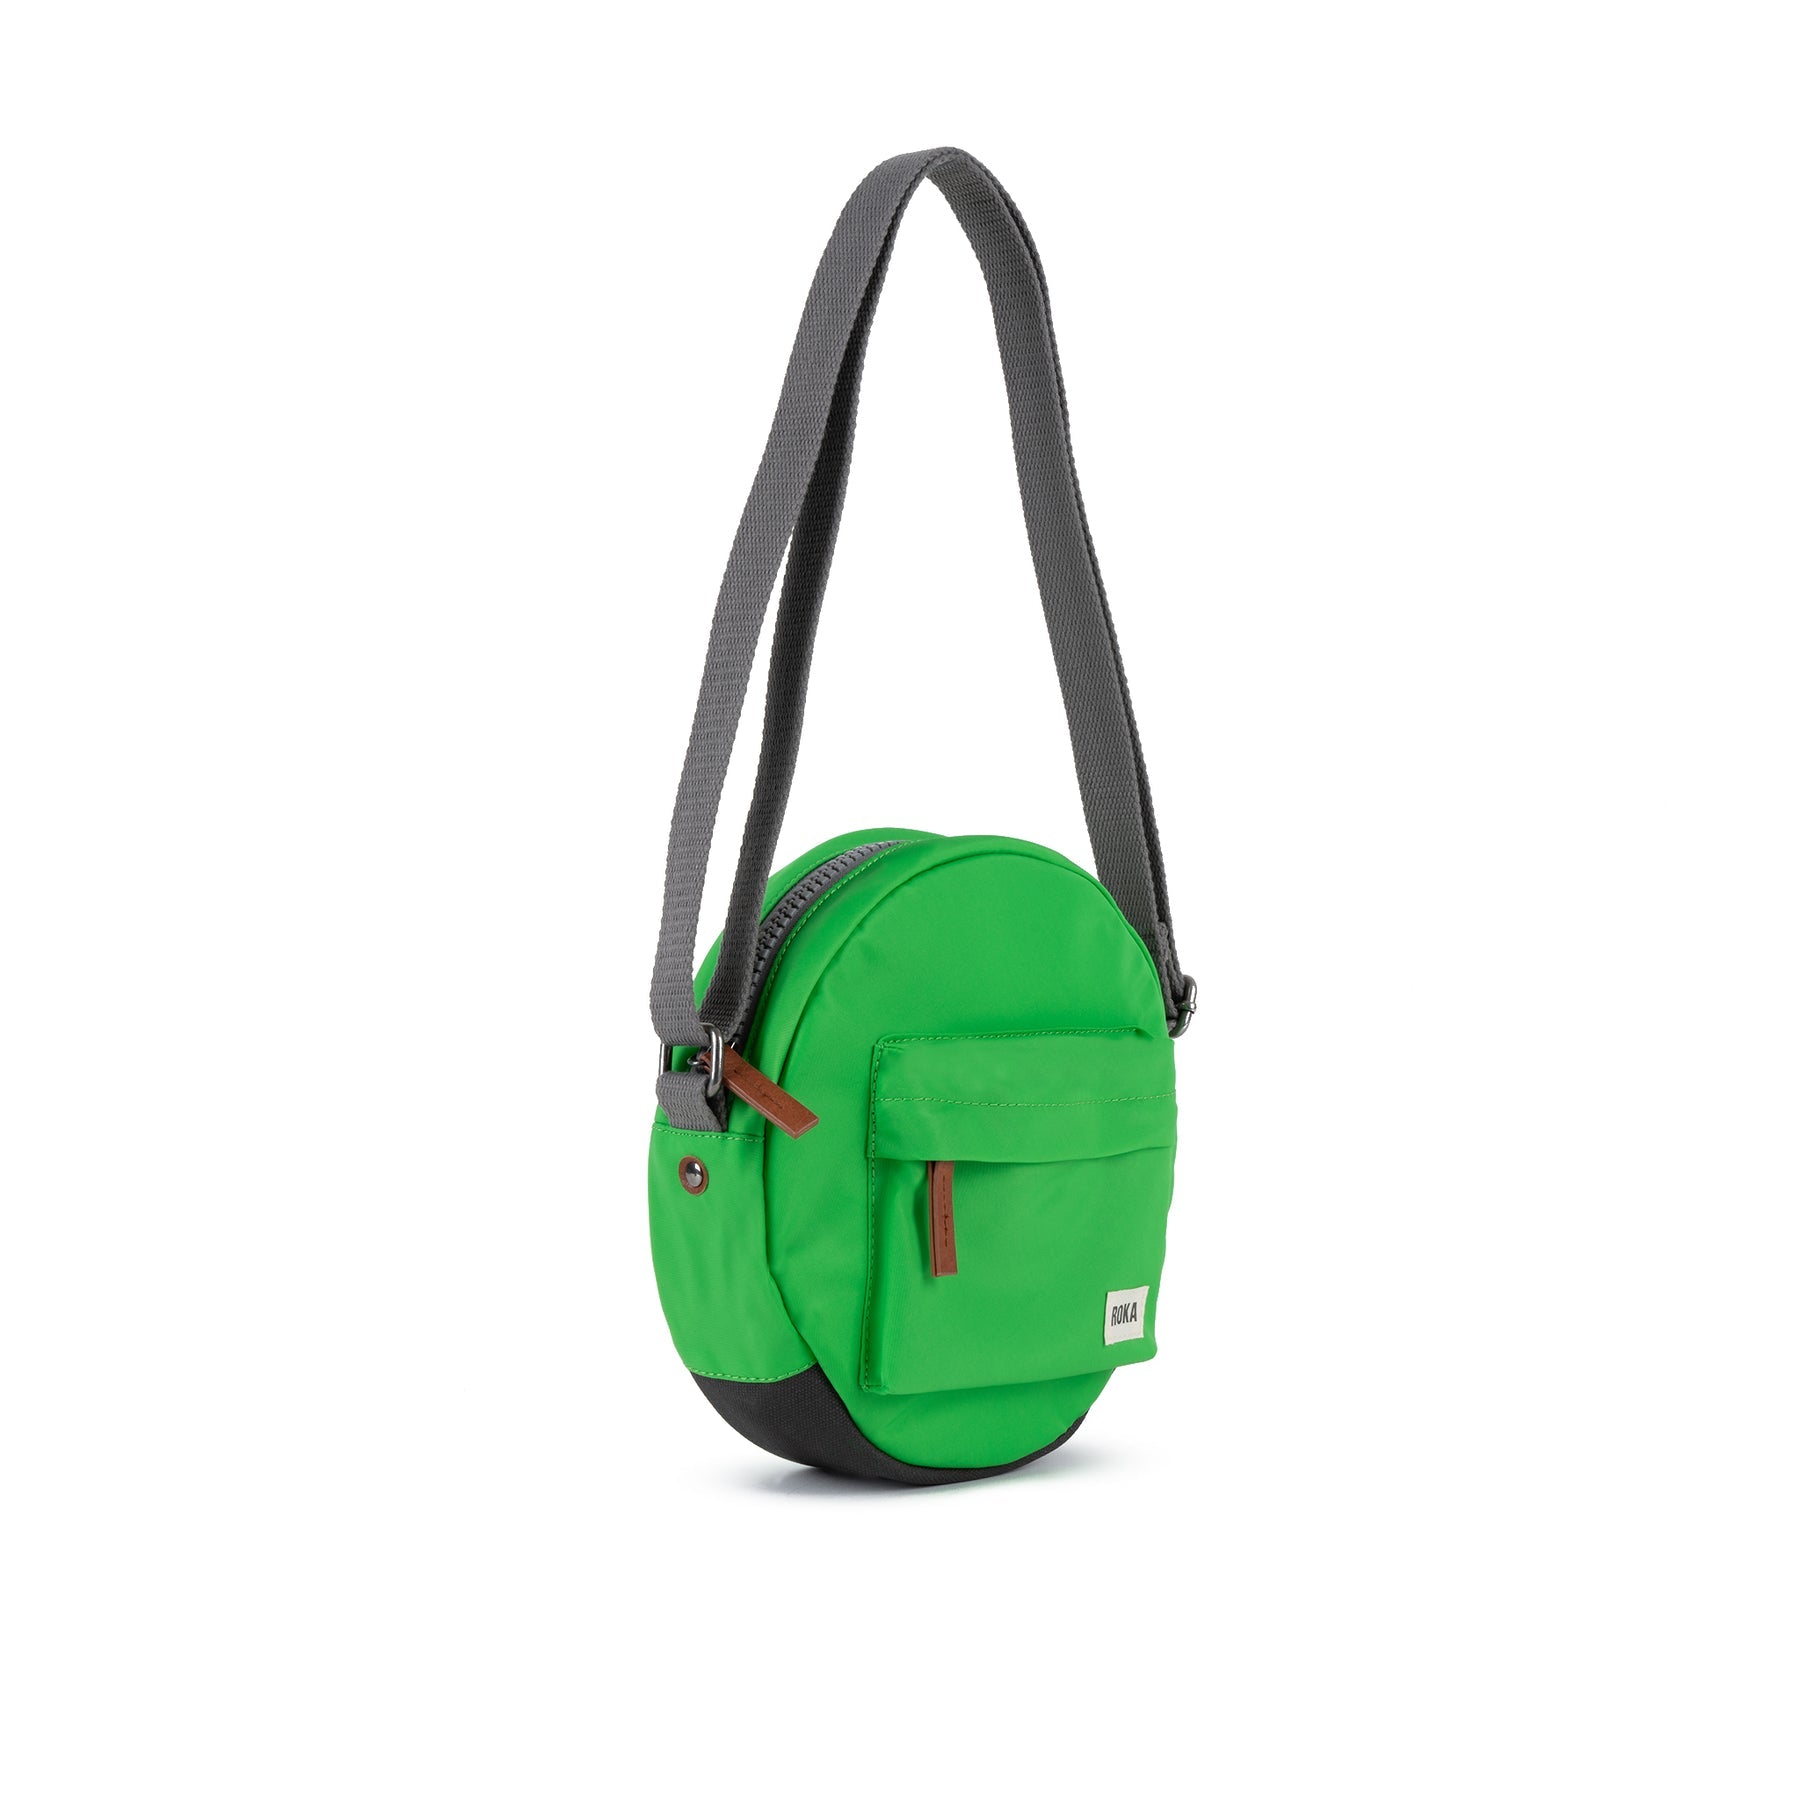 ROKA Paddington B Kelly Green Small Recycled Nylon Bag - OS